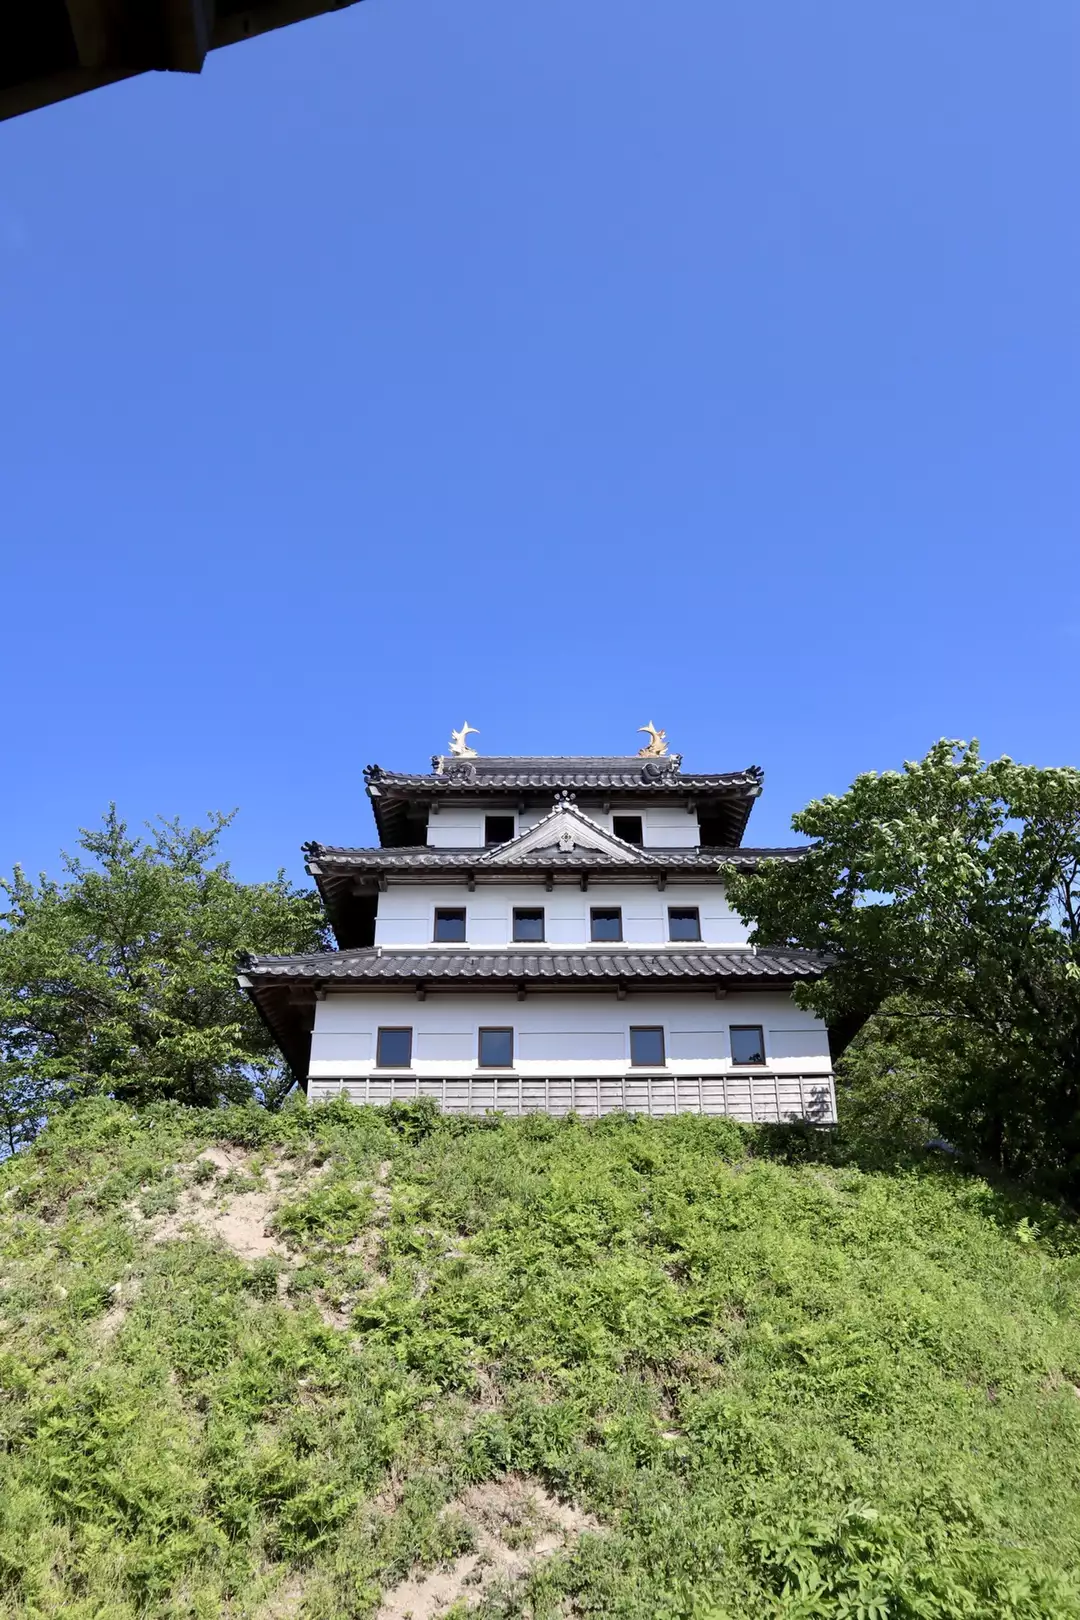 羽衣石城へ としさんの三徳山 投入堂の活動データ Yamap ヤマップ